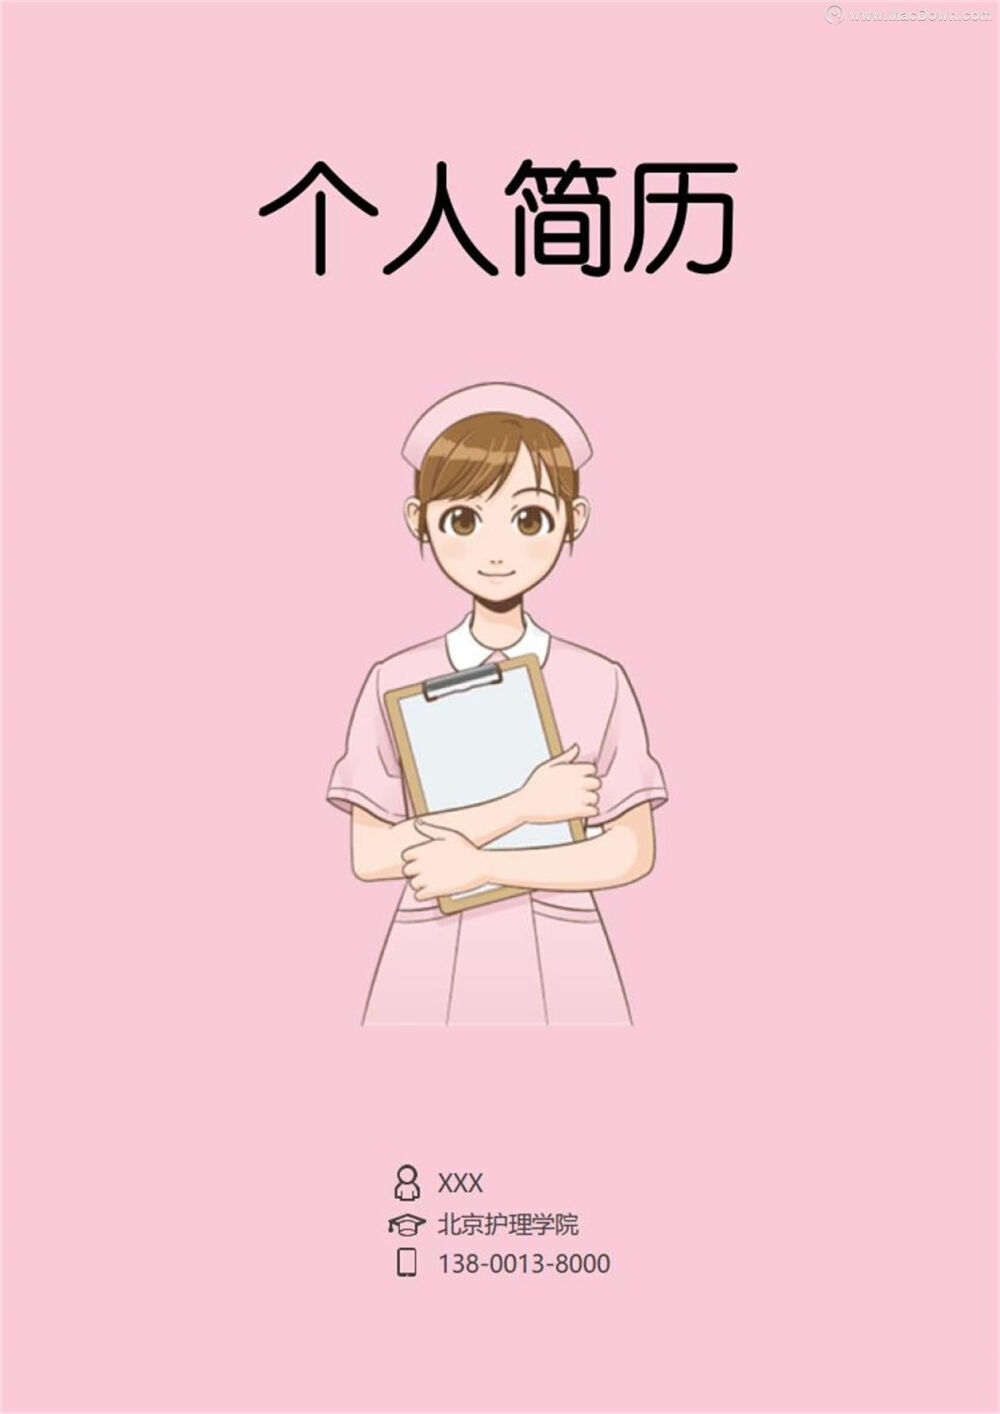 一款粉红系卡通人物风格简历模板,非常符合护士这个行业,本模板格式为